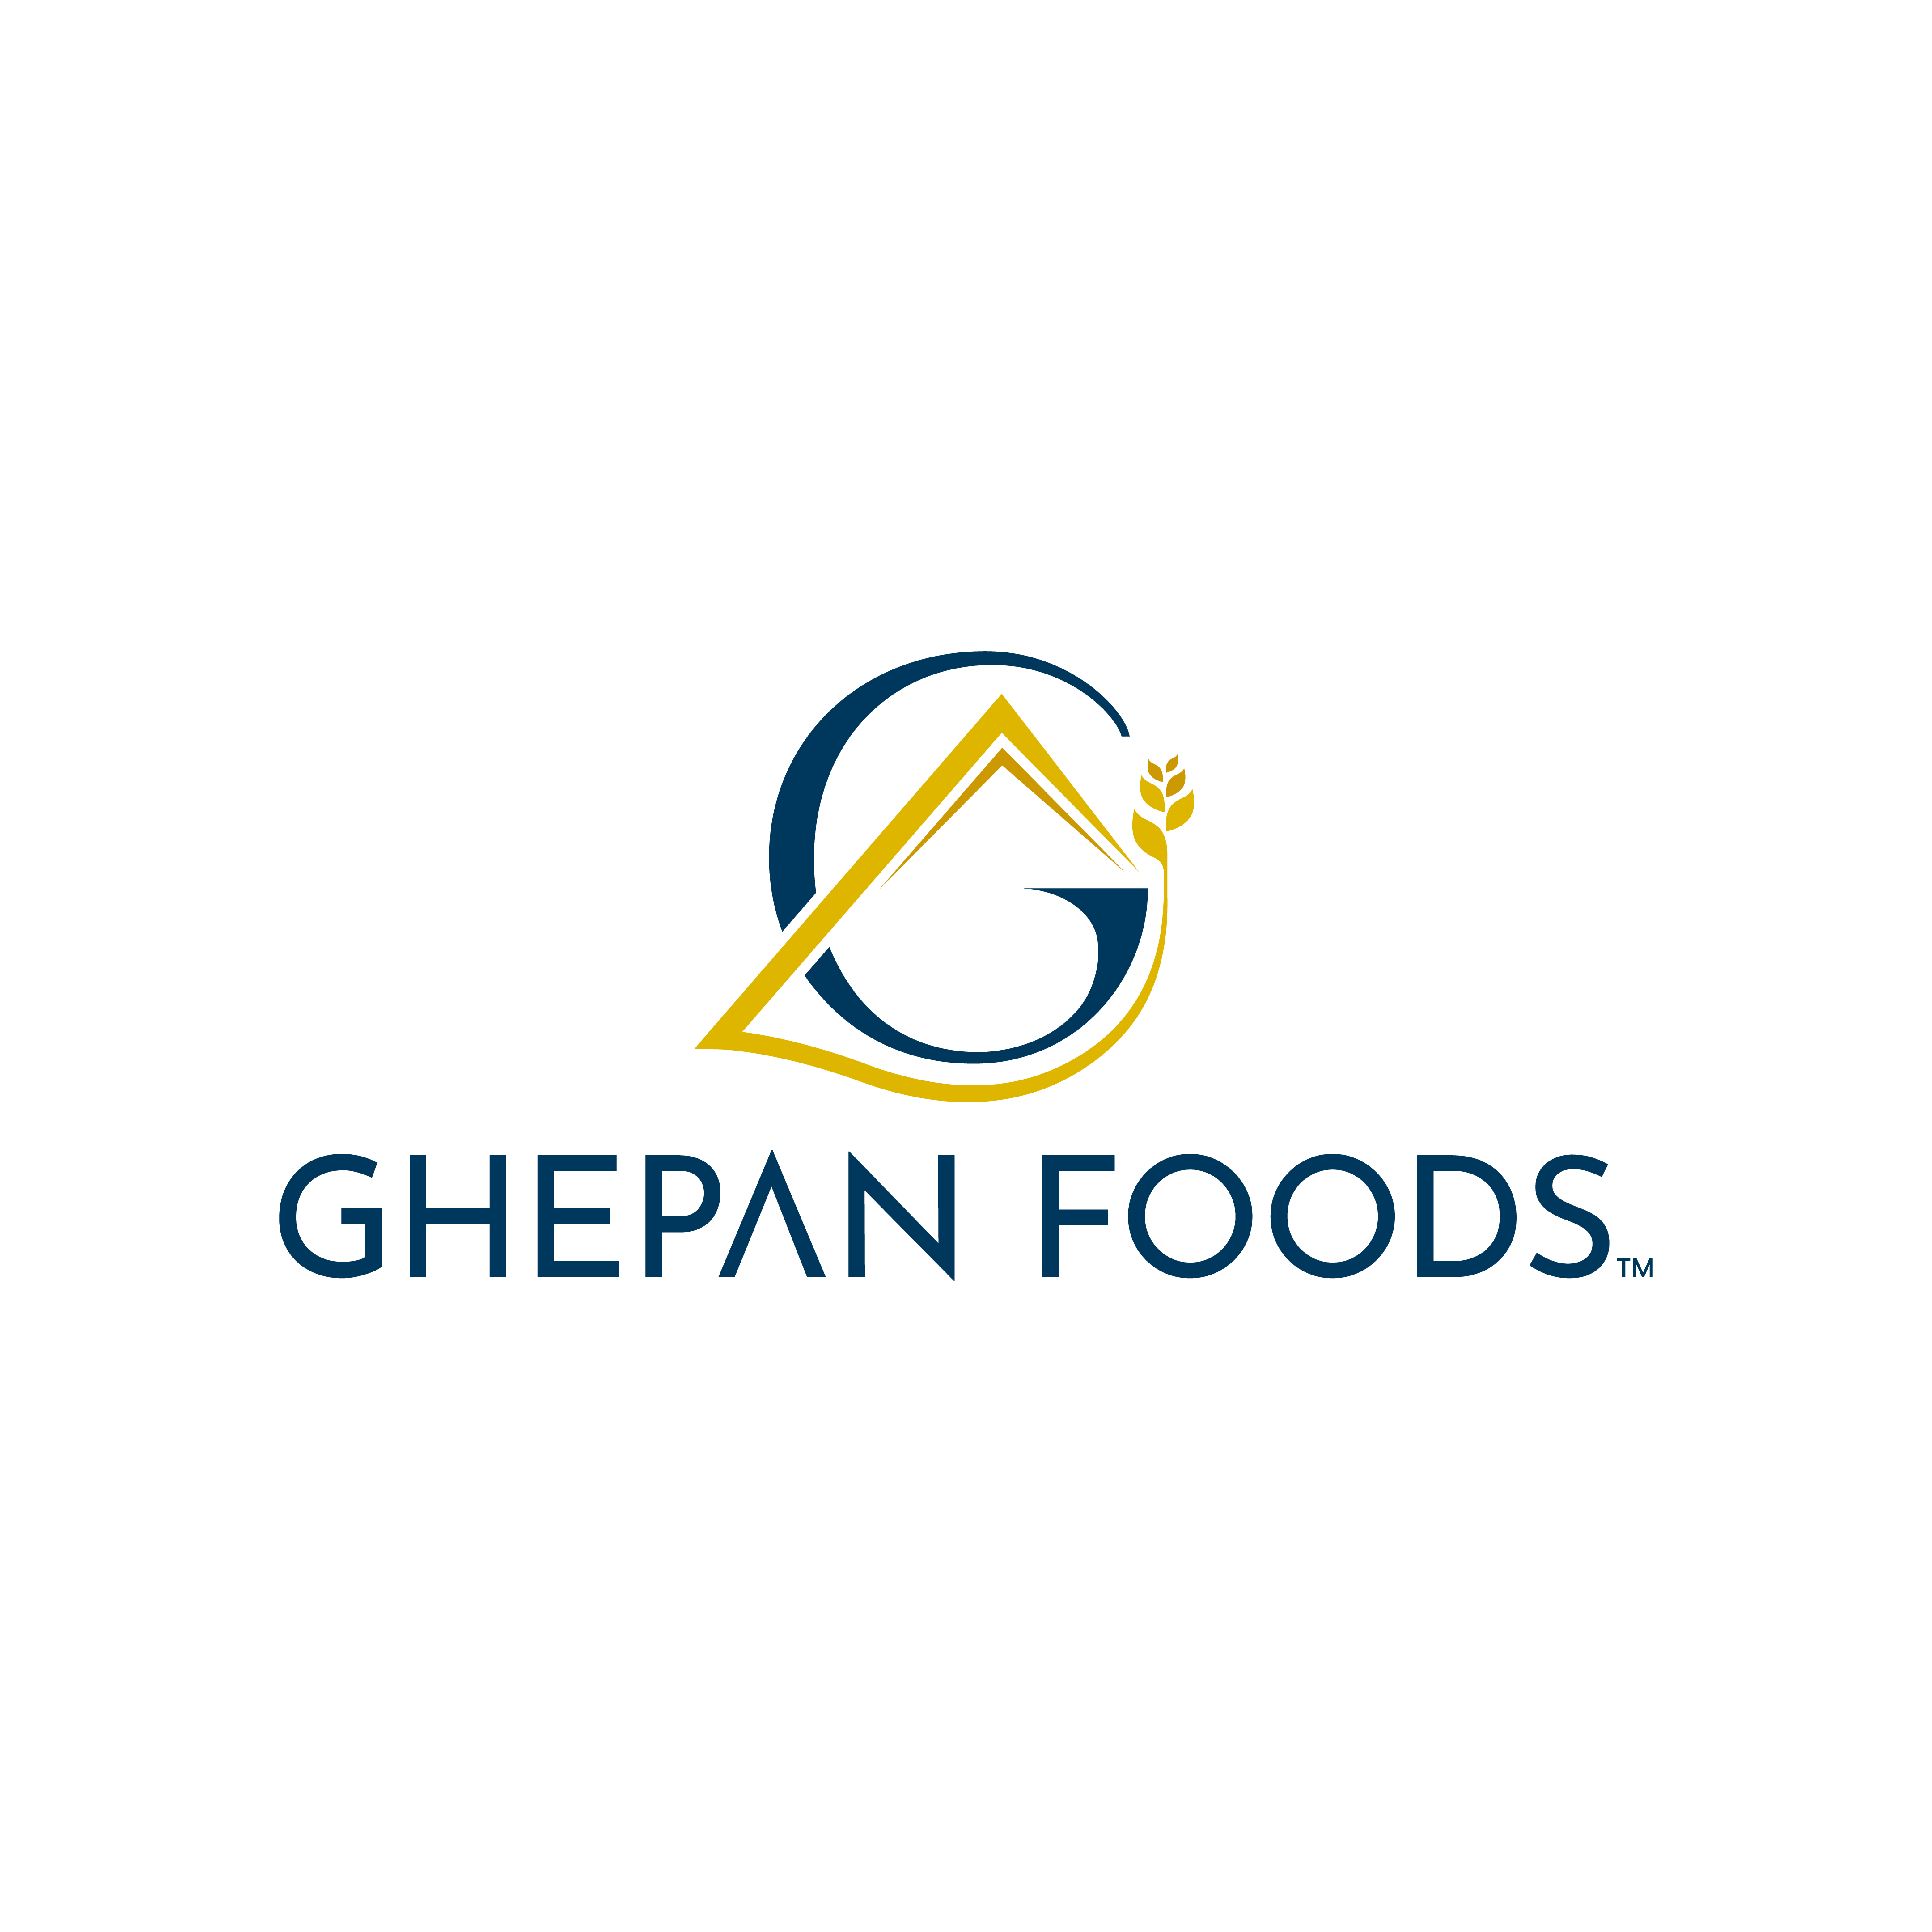 GHEPAN FOODS